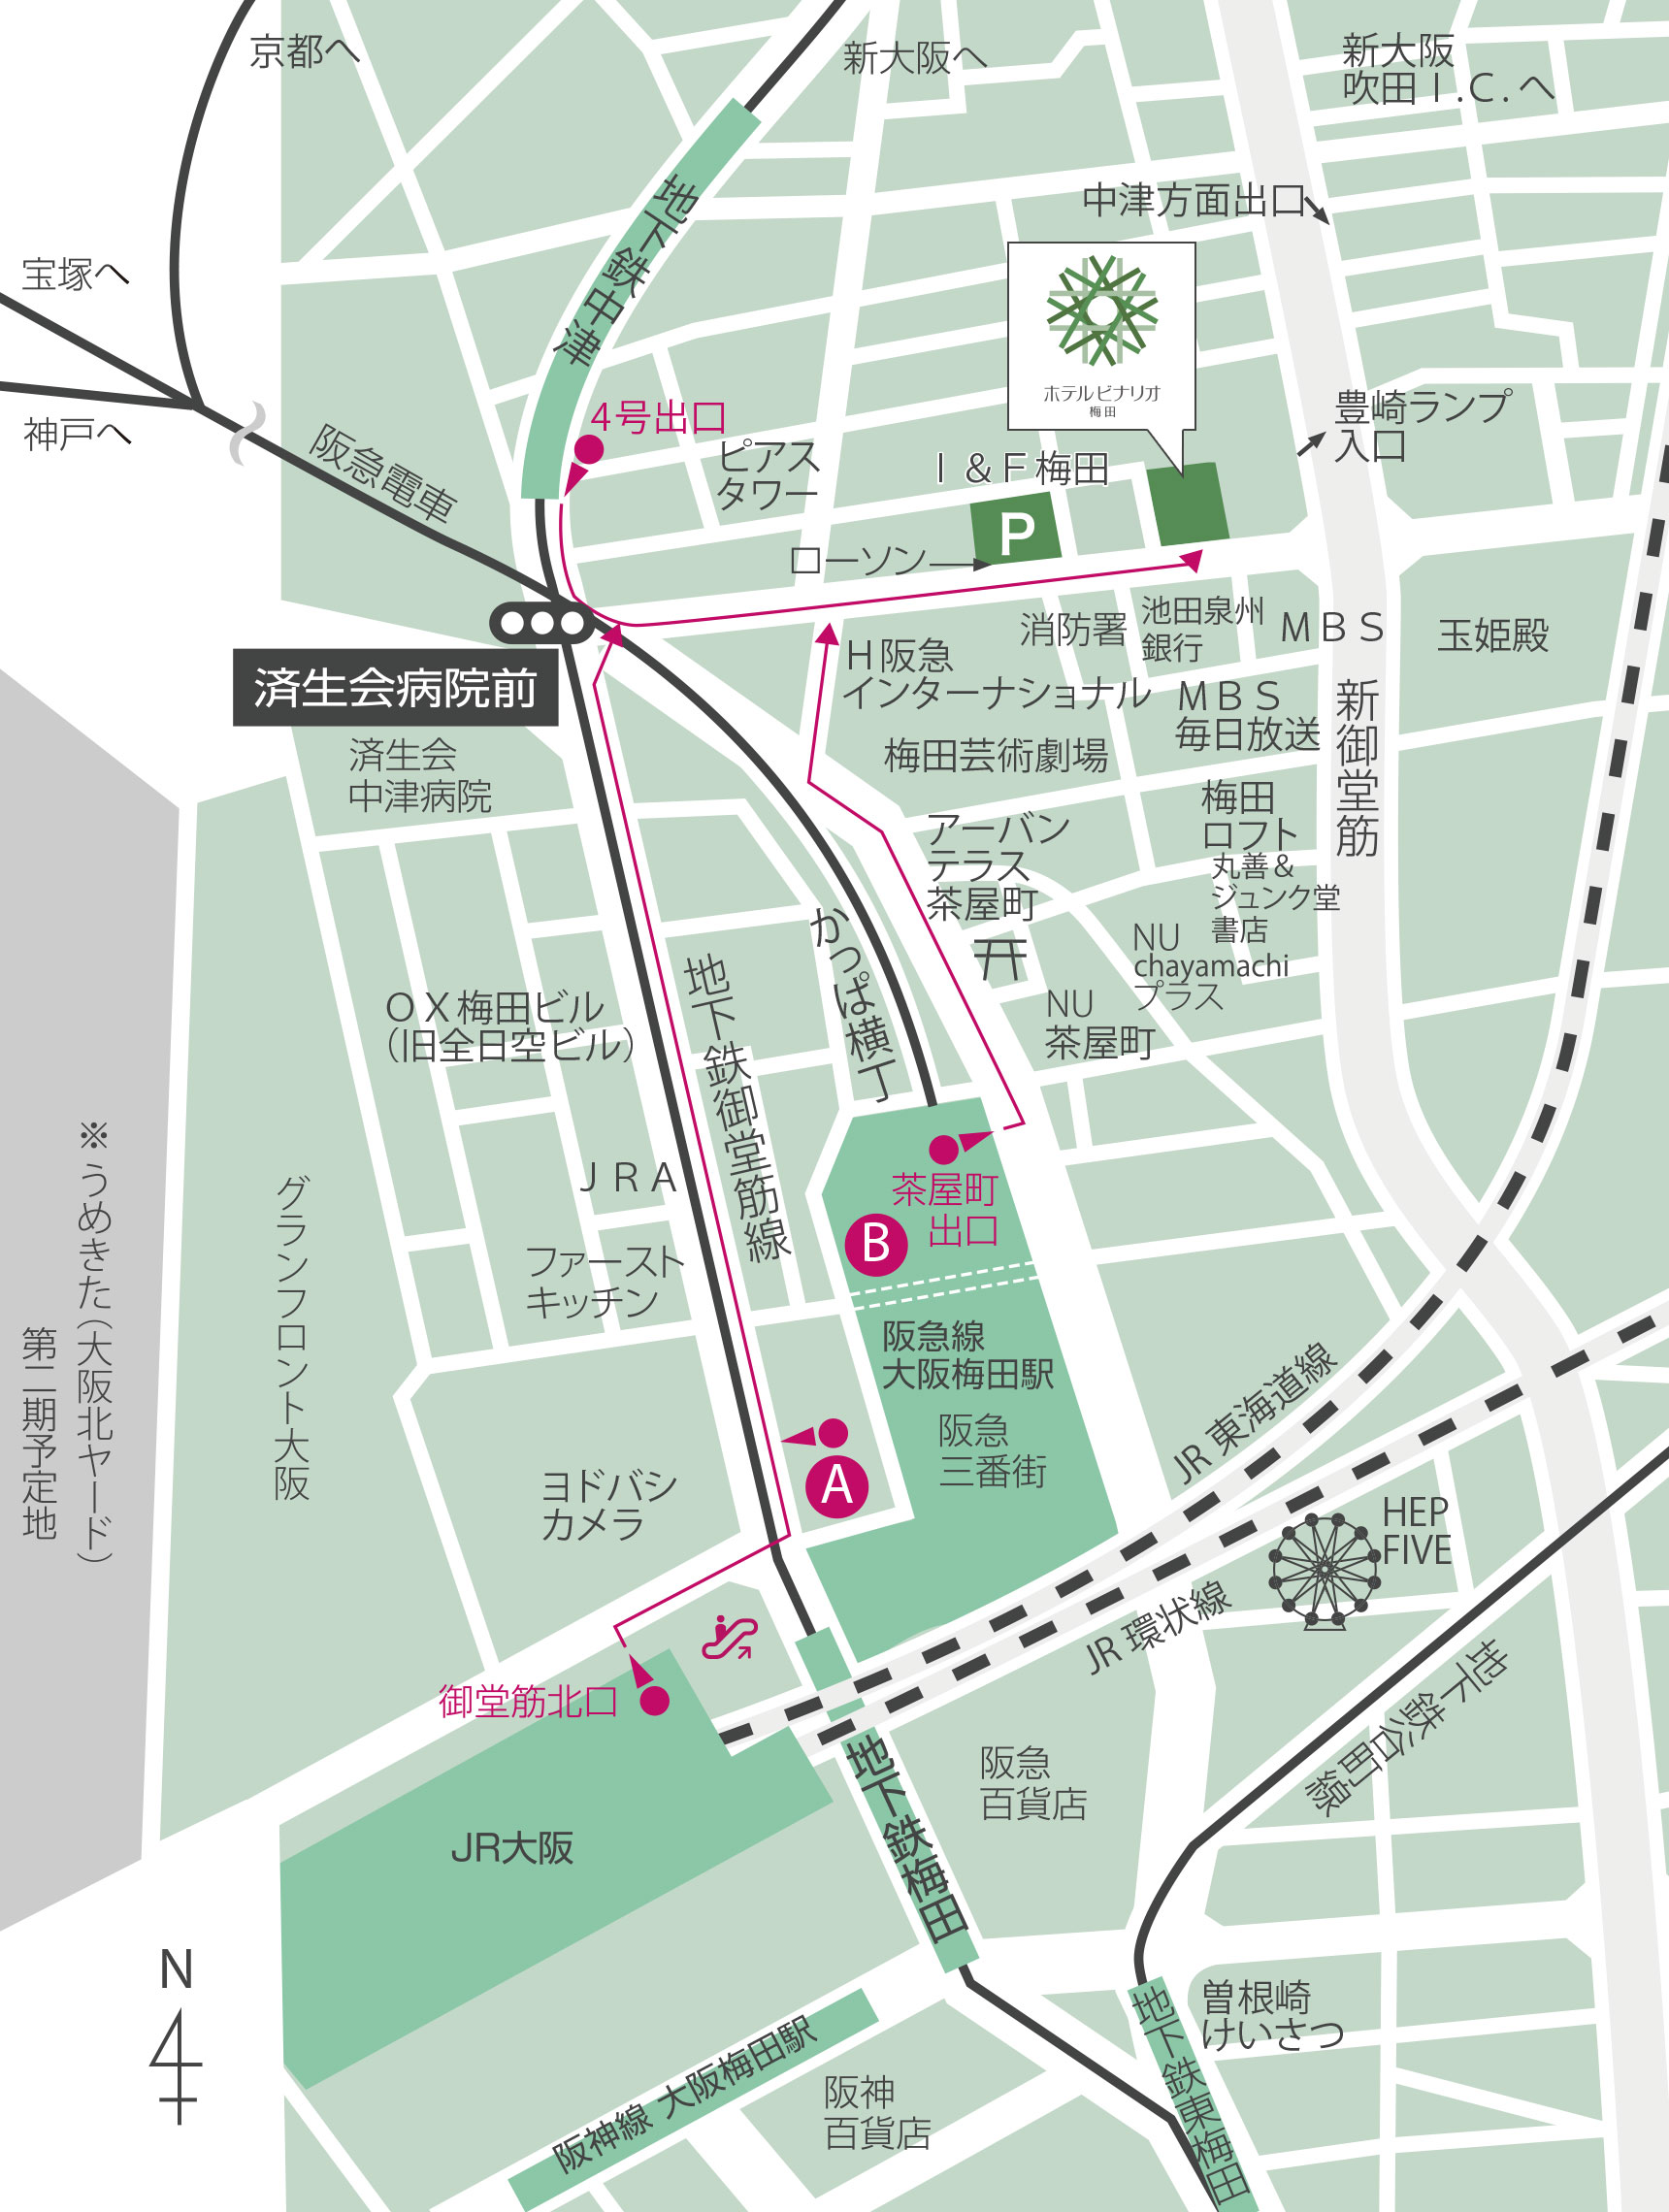 アクセス 公式 ホテルビナリオ梅田 大阪駅より徒歩10分